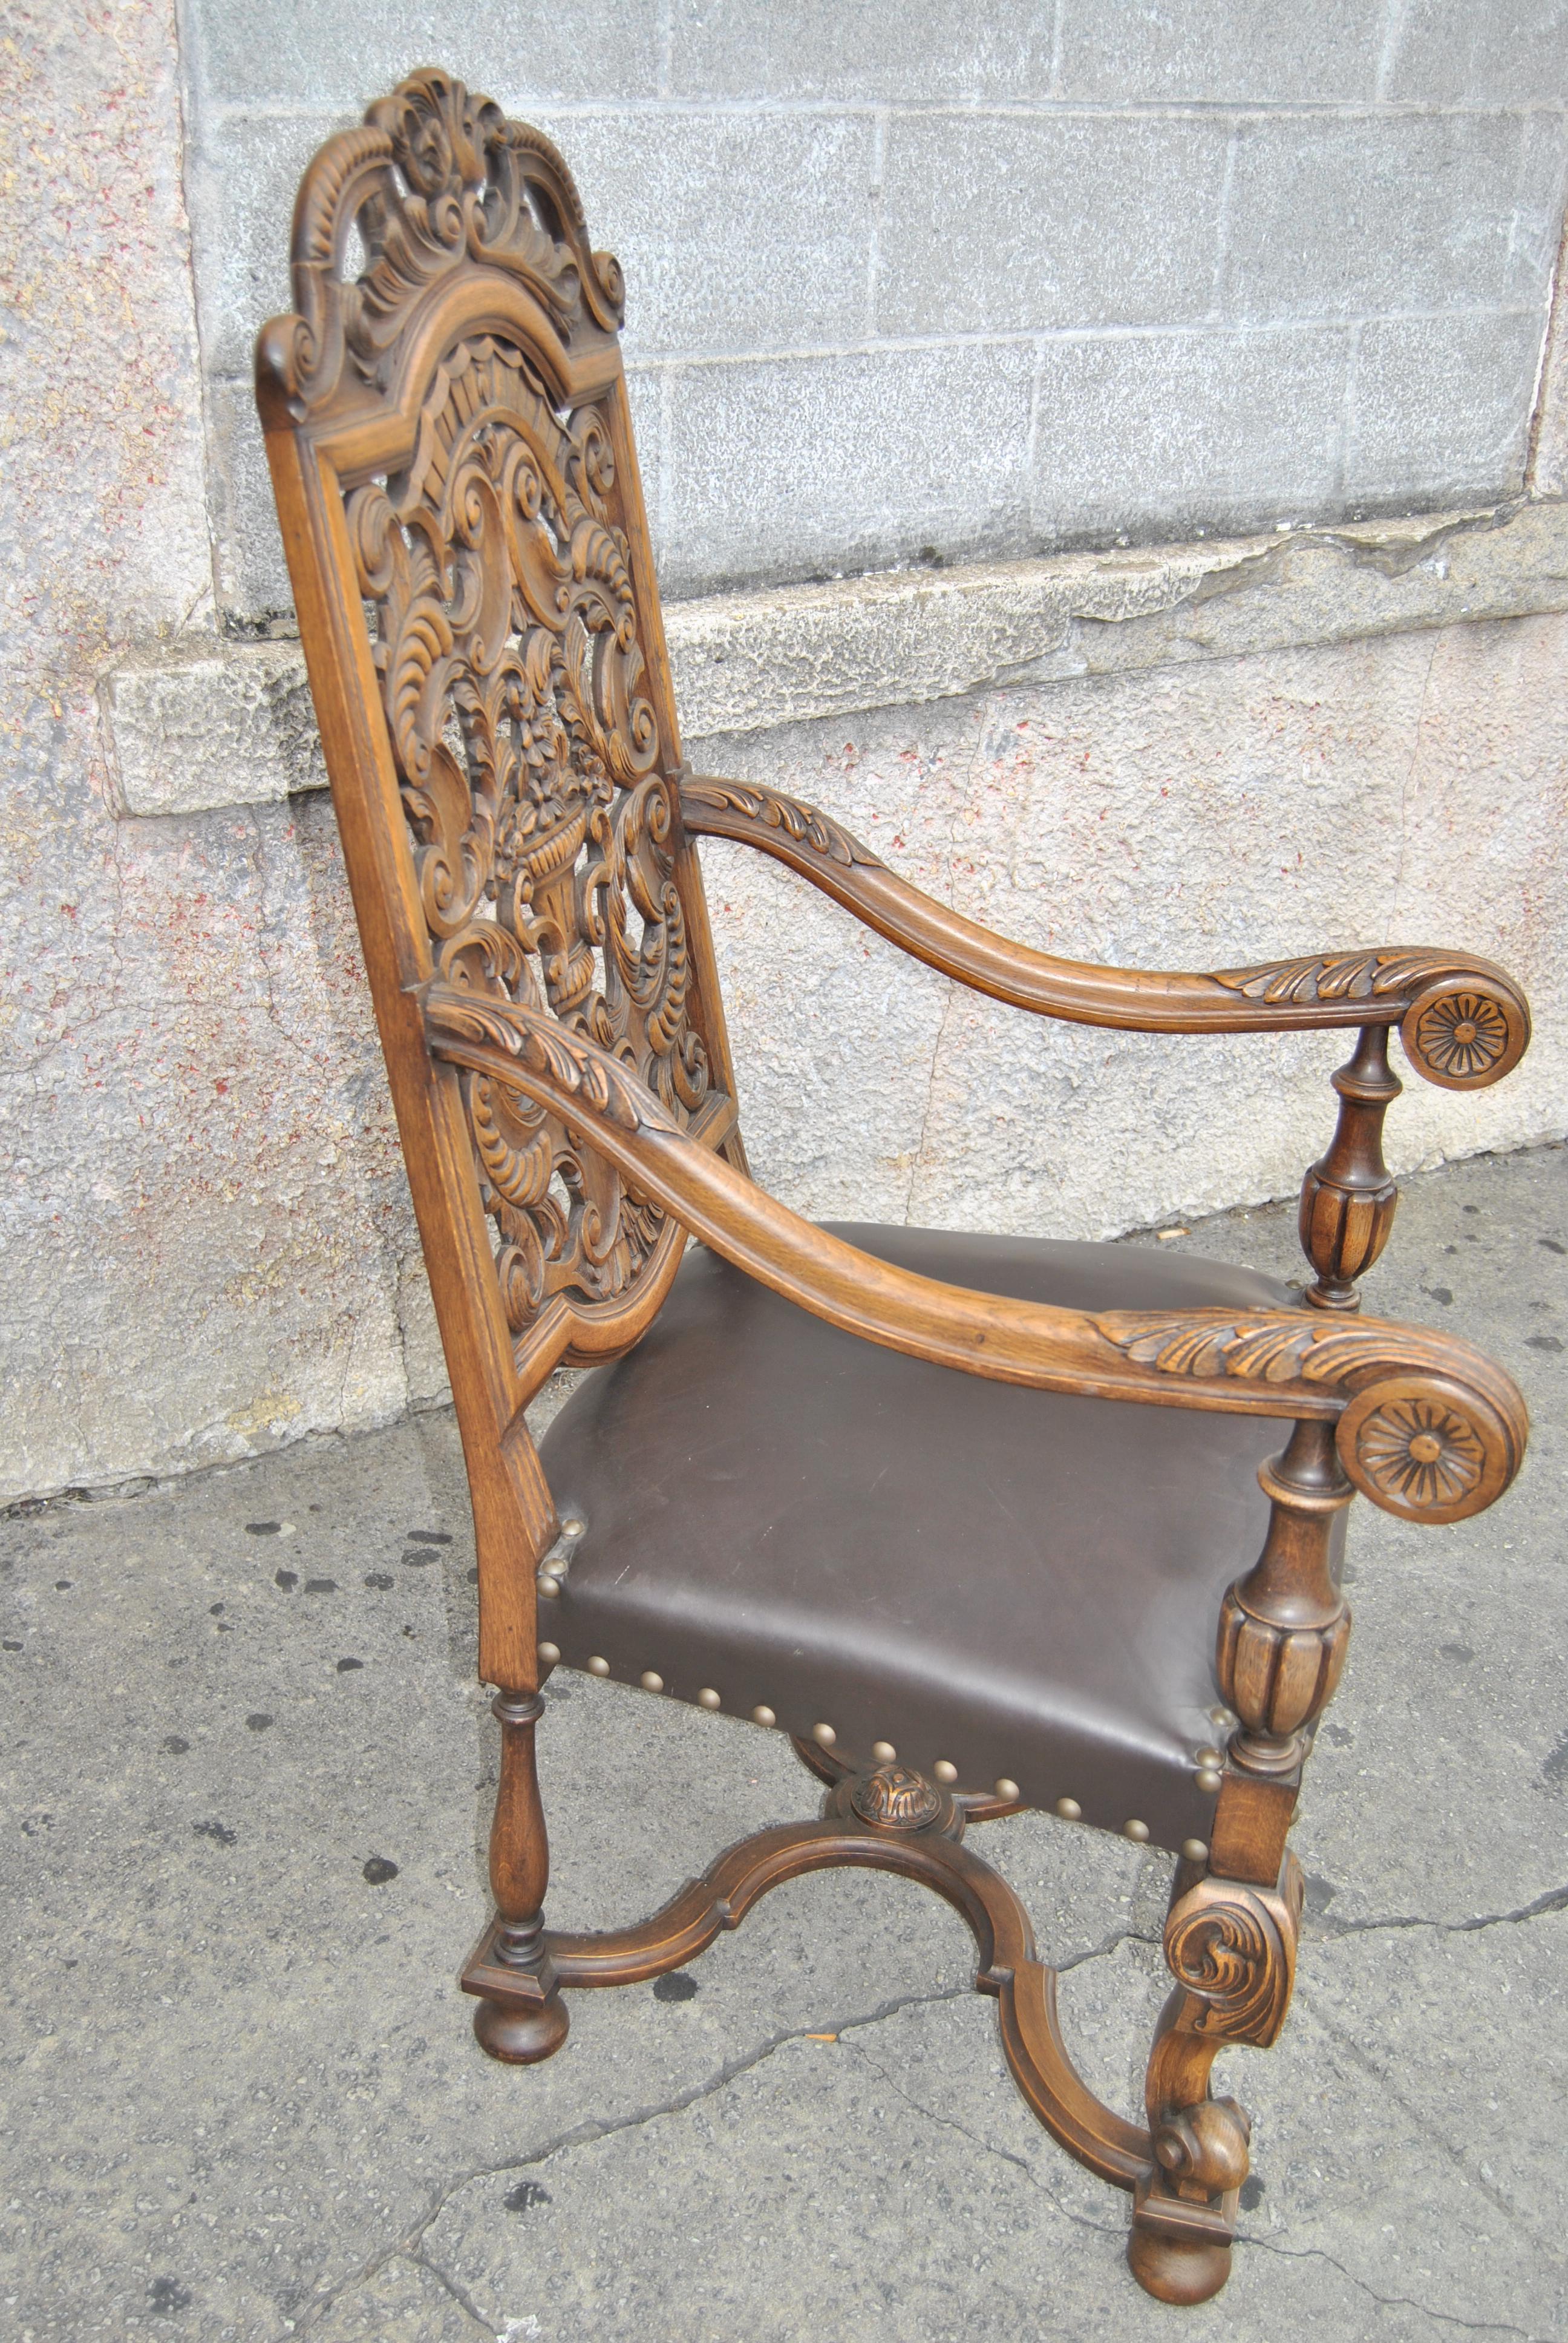 Dies ist ein geschnitzter Armlehnstuhl aus massiver Eiche im elisabethanischen Stil. Der Stuhl wurde in England um 1900 hergestellt. Alle Schnitzereien sind handgefertigt und von höchster Qualität und Tiefe. Der Stuhl hat eine fabelhaft geformte